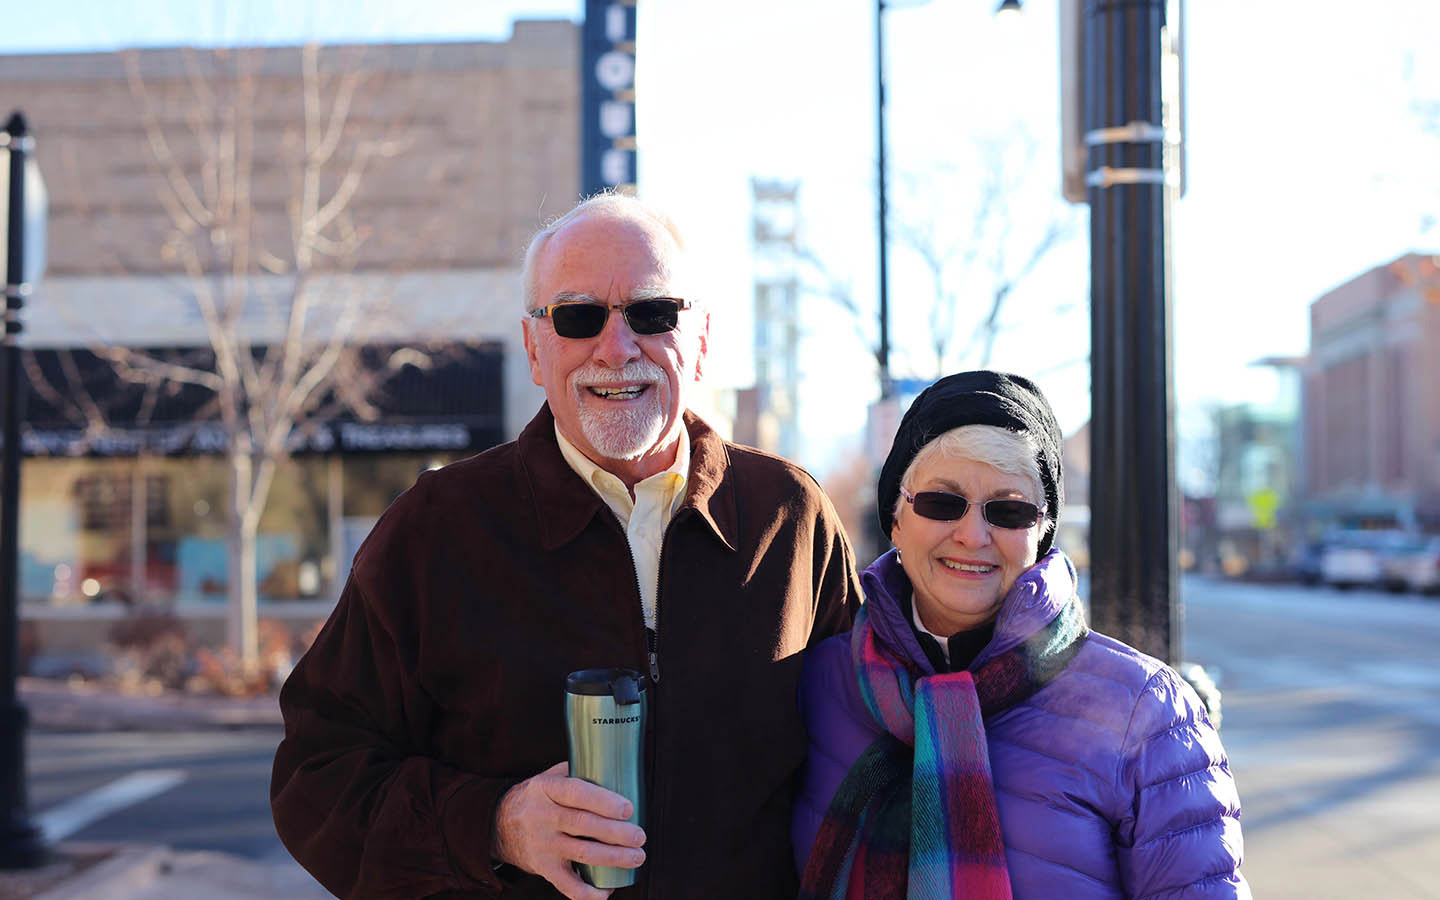 Cochlear-käyttäjä Tom ja hänen vaimonsa Brenda poseeraavat kuvaan kadulla